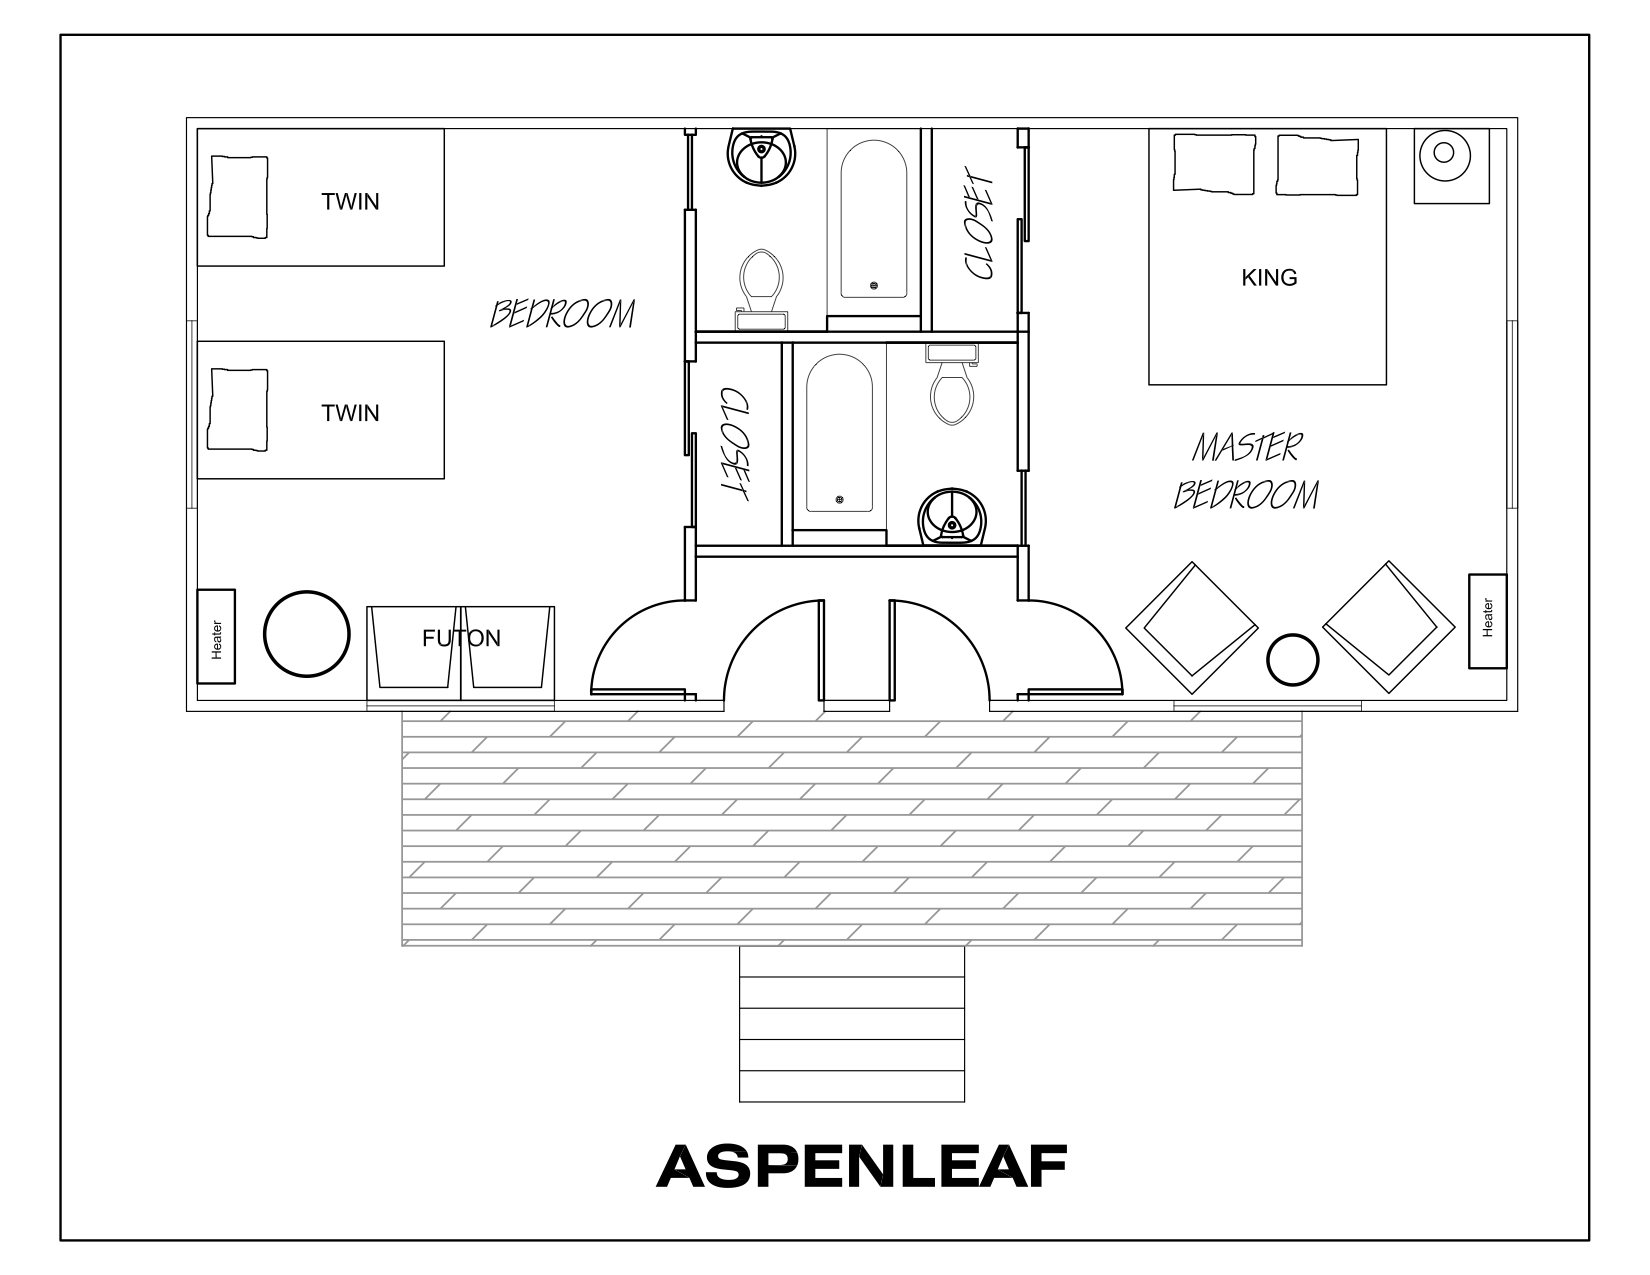 Aspen leaf floorplan.